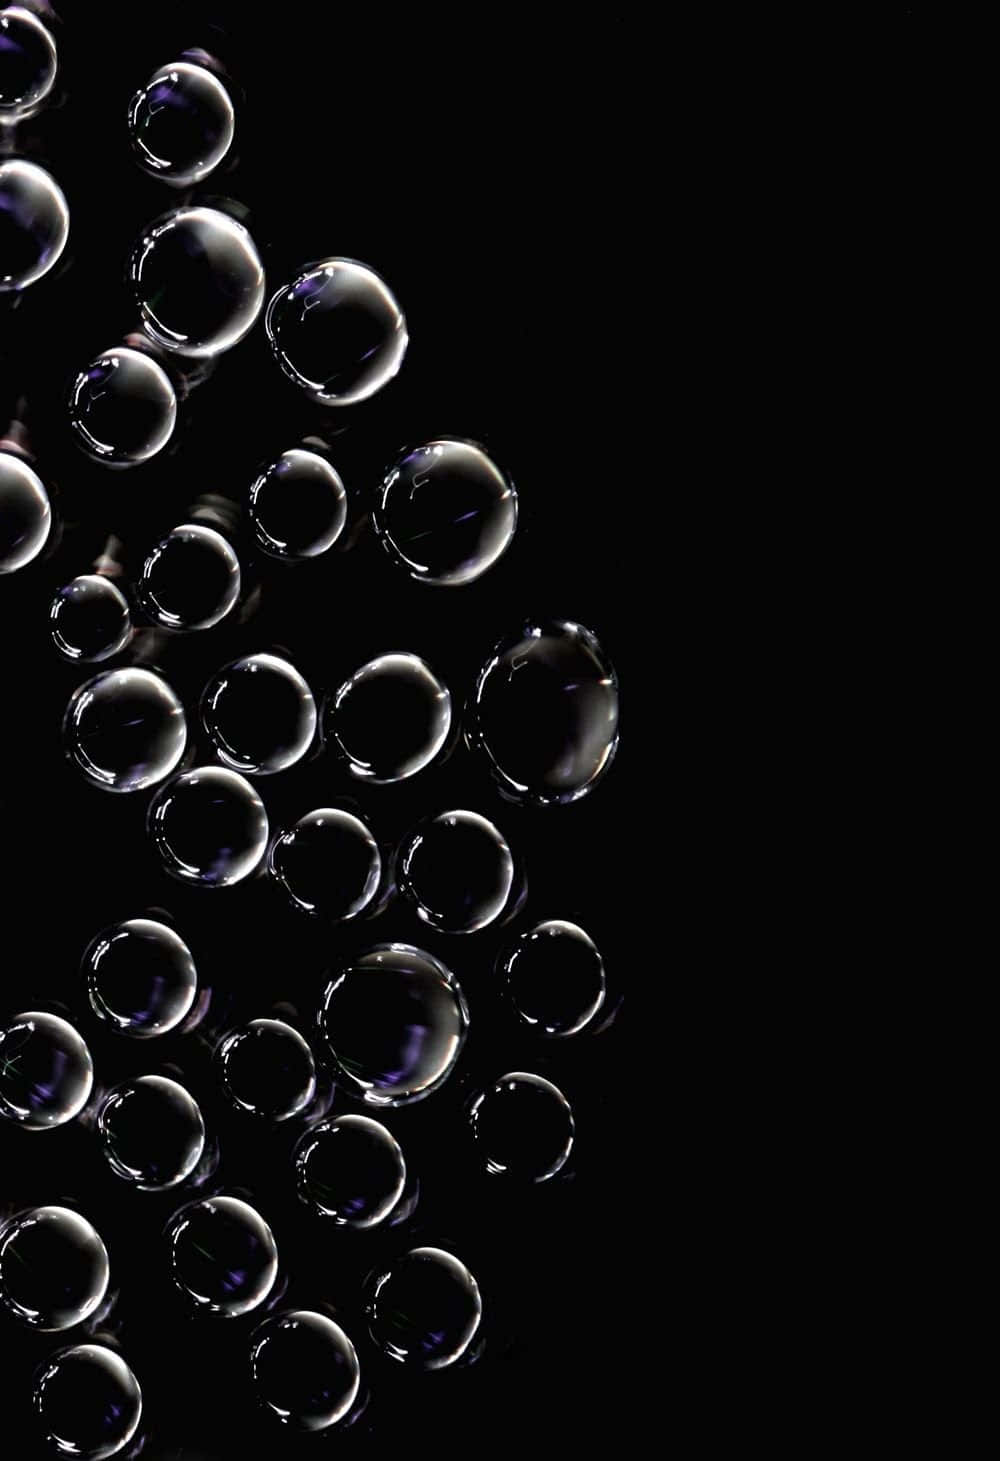 Fondode Burbujas - Burbujas Flotantes En Una Superficie Oscura.